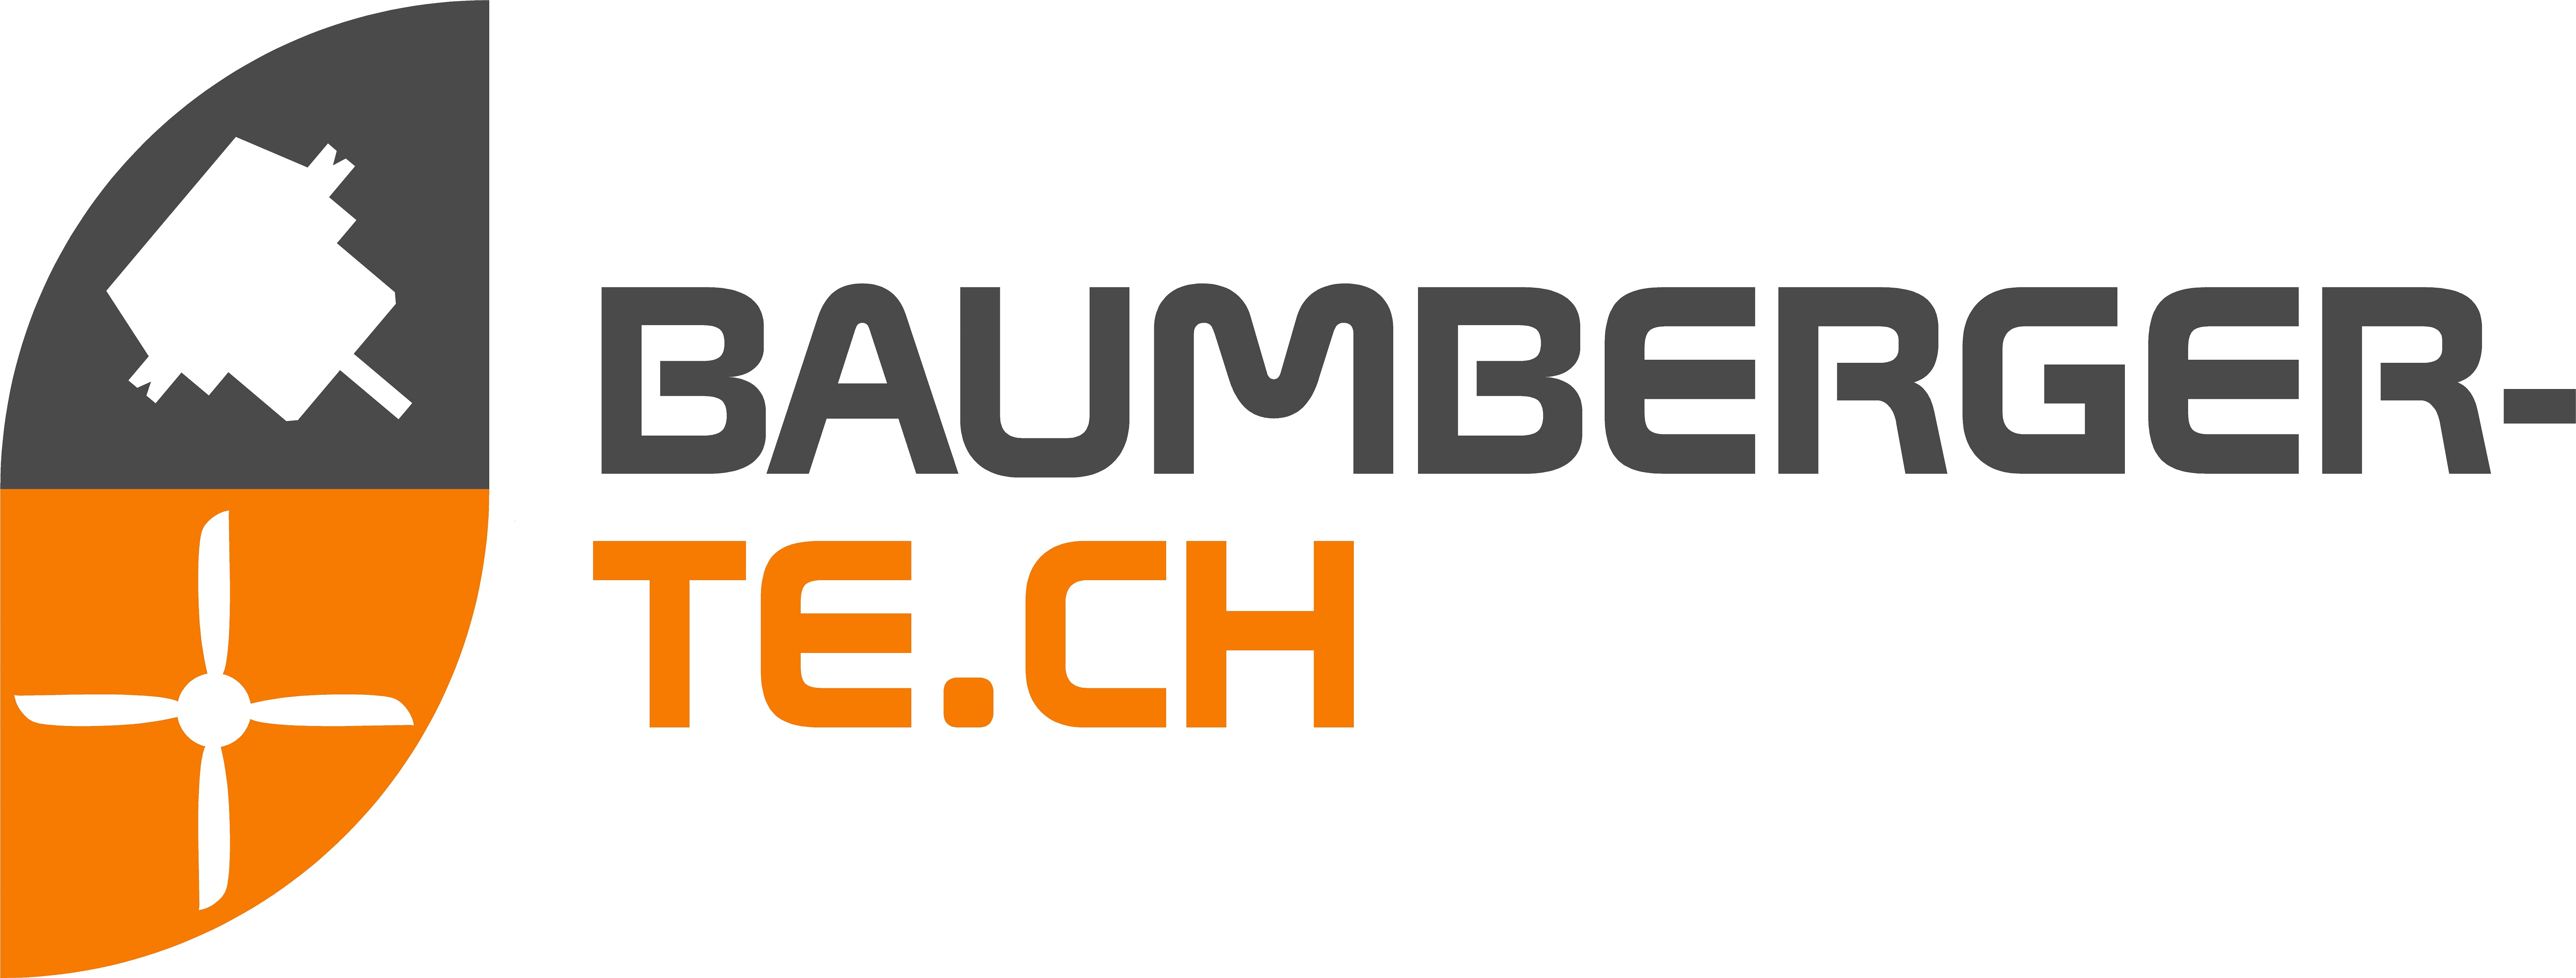 Baumberger-Tech